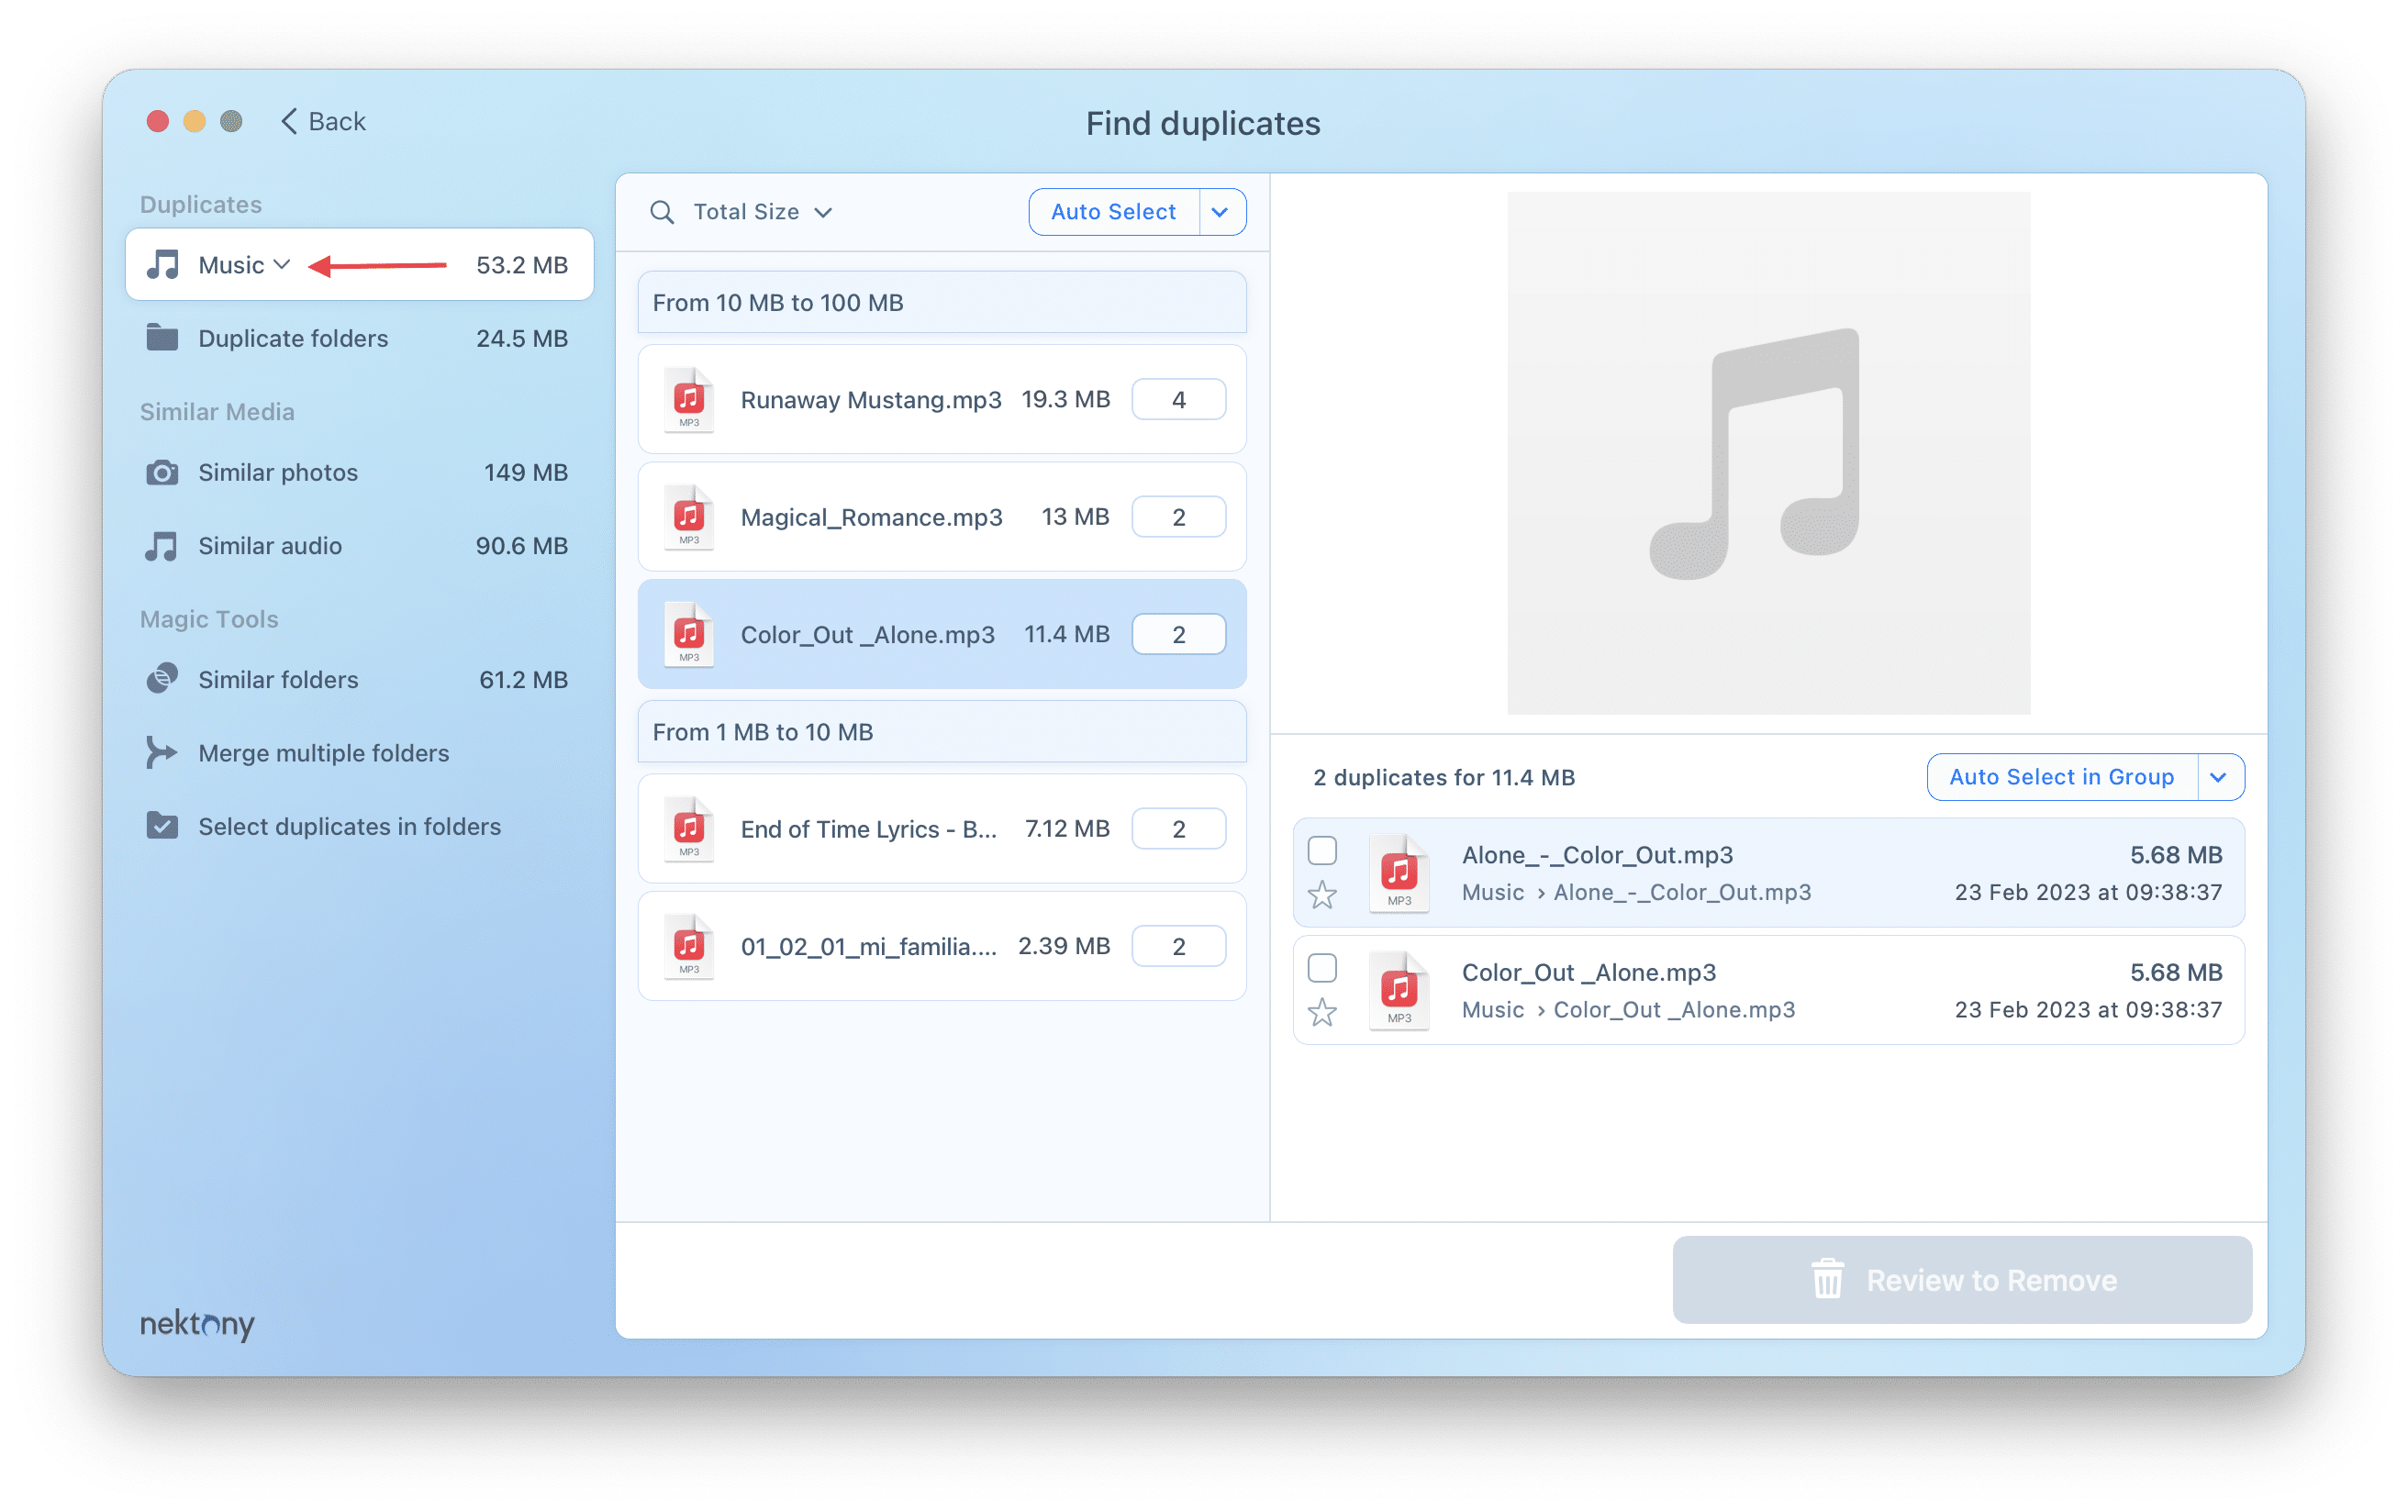 Duplicate File Finder showing duplicate music files